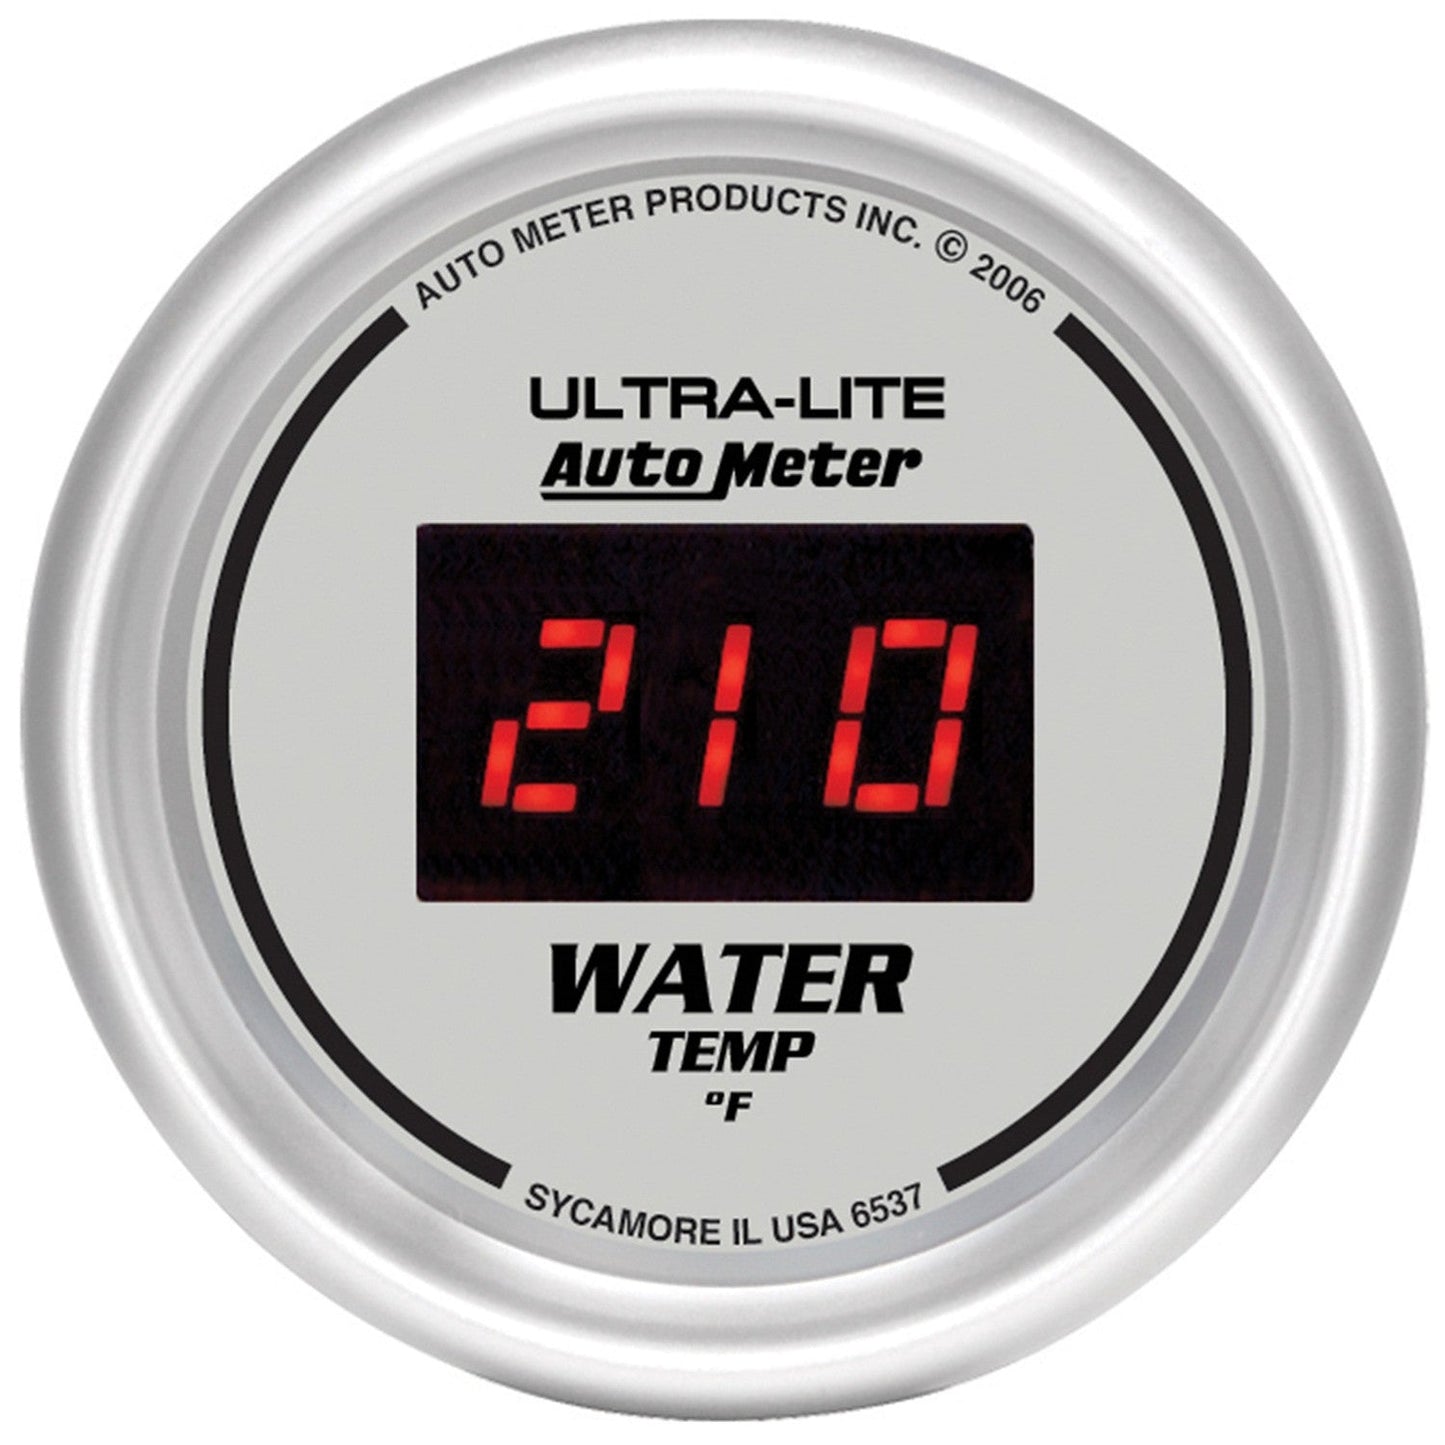 AutoMeter - 2-1/16" TEMPERATURA DA ÁGUA, 0-340 °F, ULTRA-LITE DIGITAL (6537)